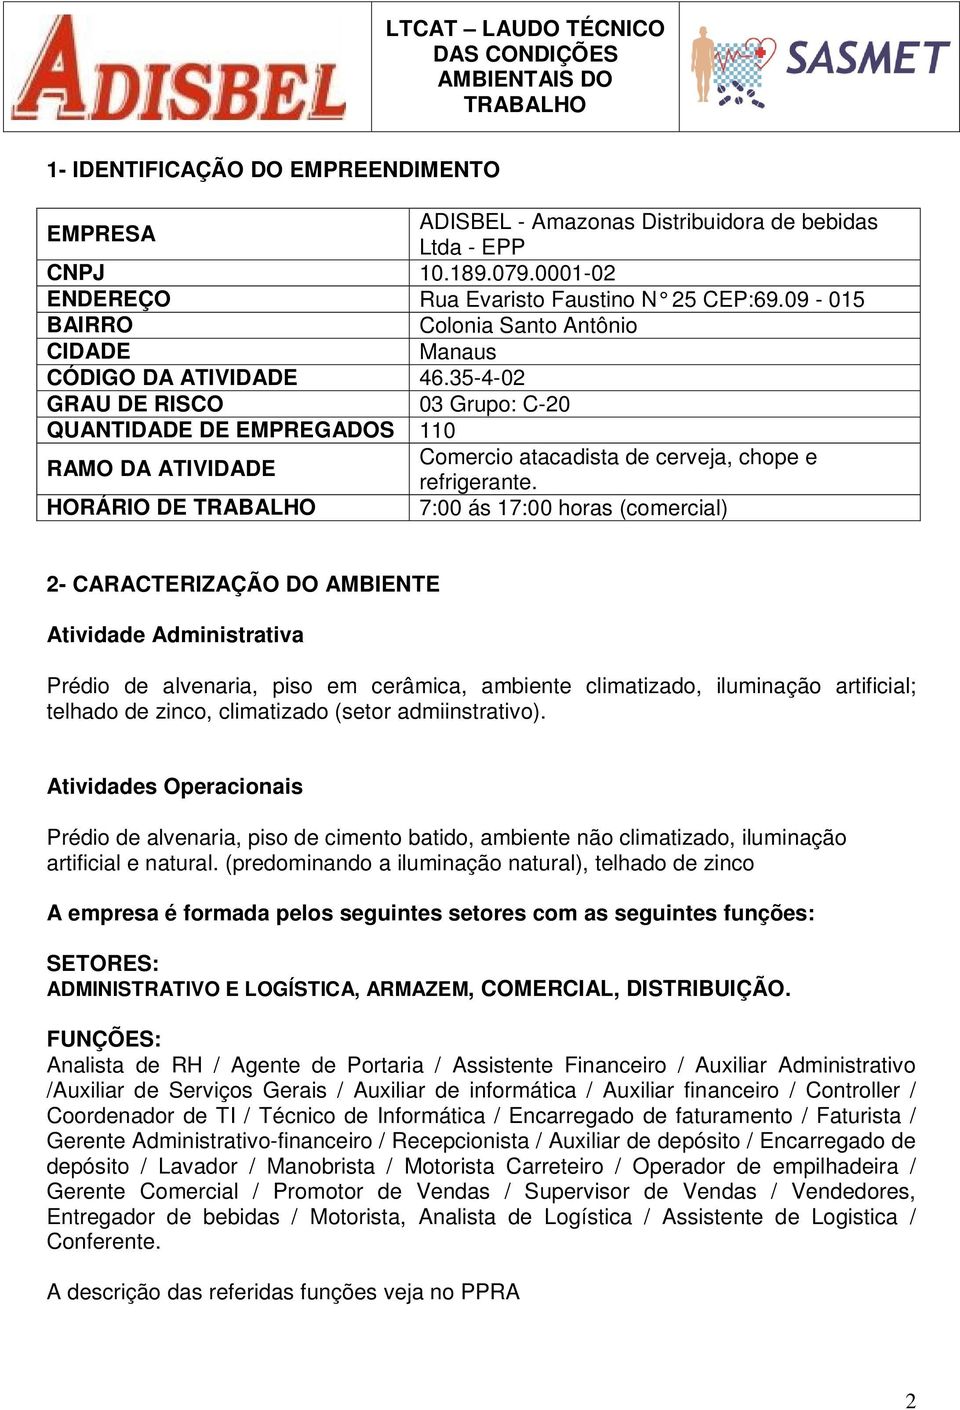 35-4-02 GRAU DE RISCO 03 Grupo: C-20 QUANTIDADE DE EMPREGADOS 110 RAMO DA ATIVIDADE Comercio atacadista de cerveja, chope e refrigerante.